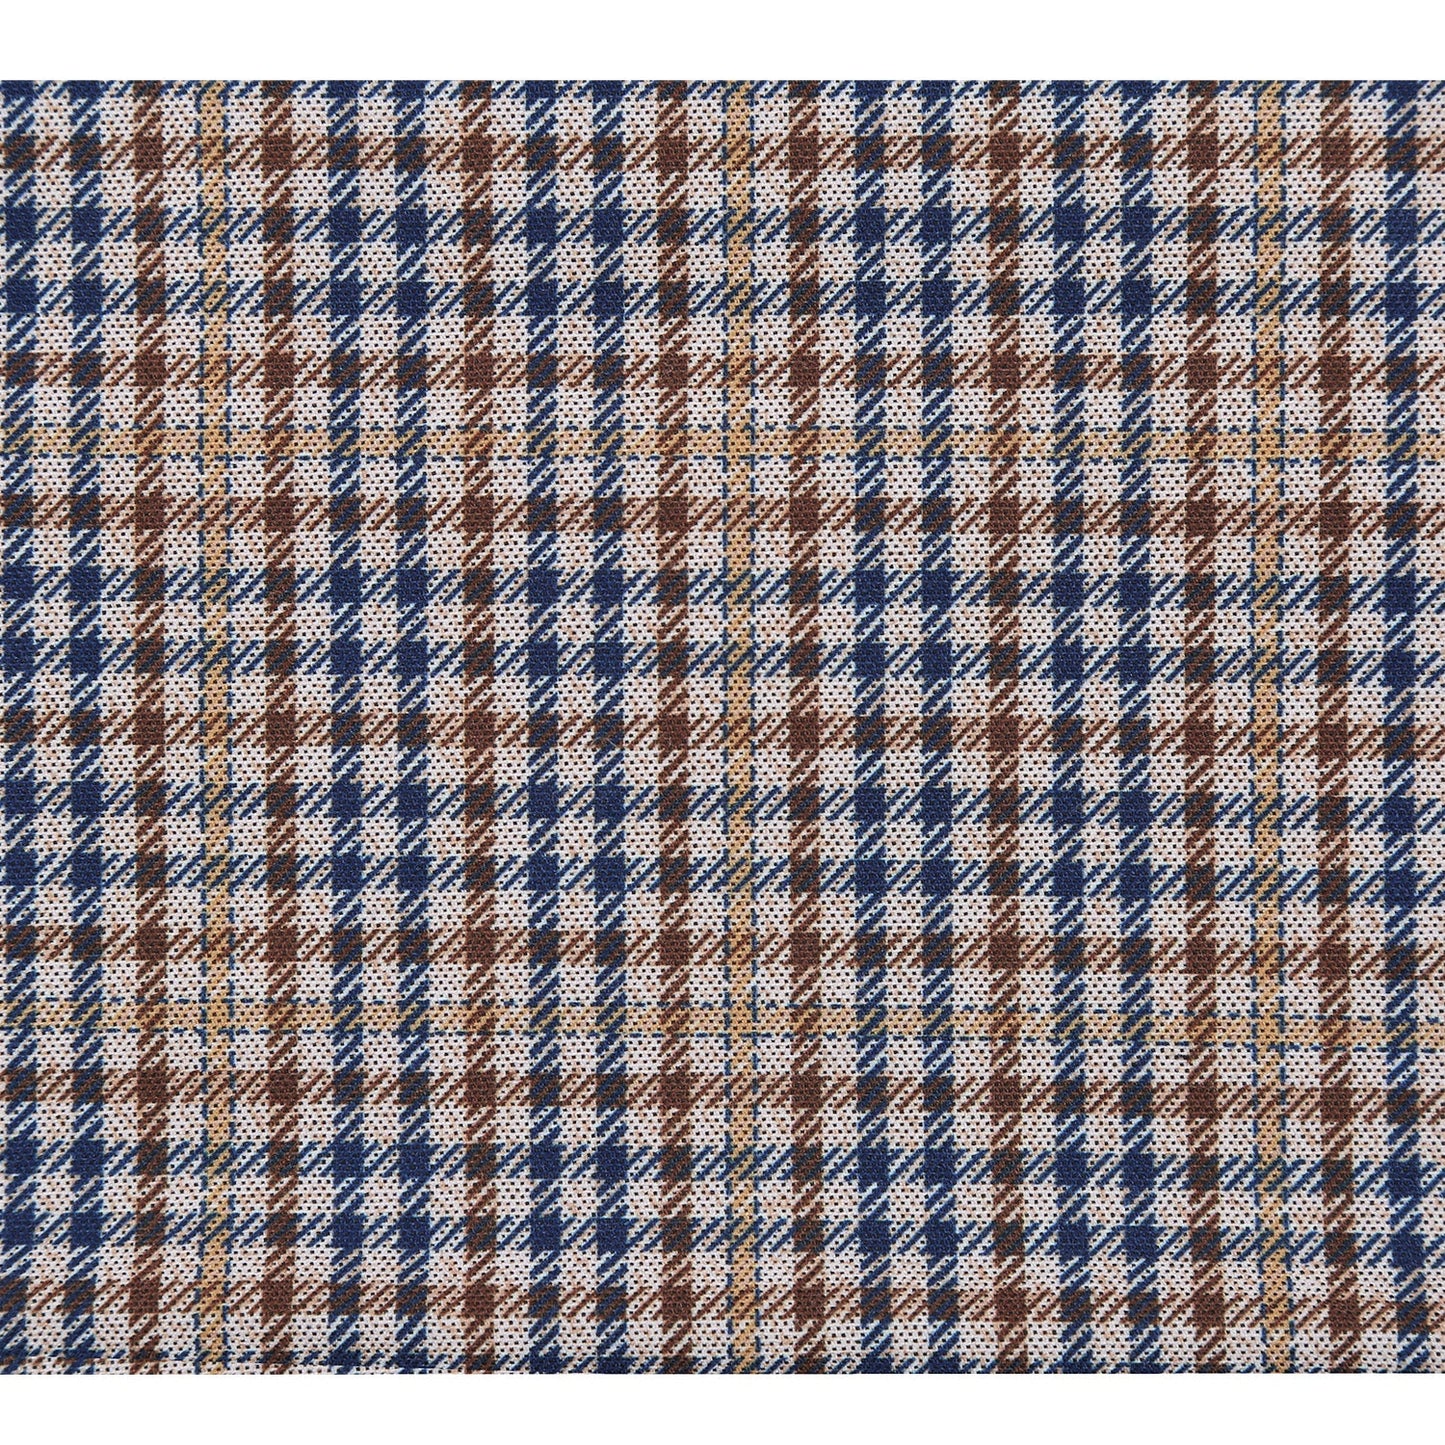 PF23-3 Men's Half Canvas Tan/Blue/Brown Check Sport Coat